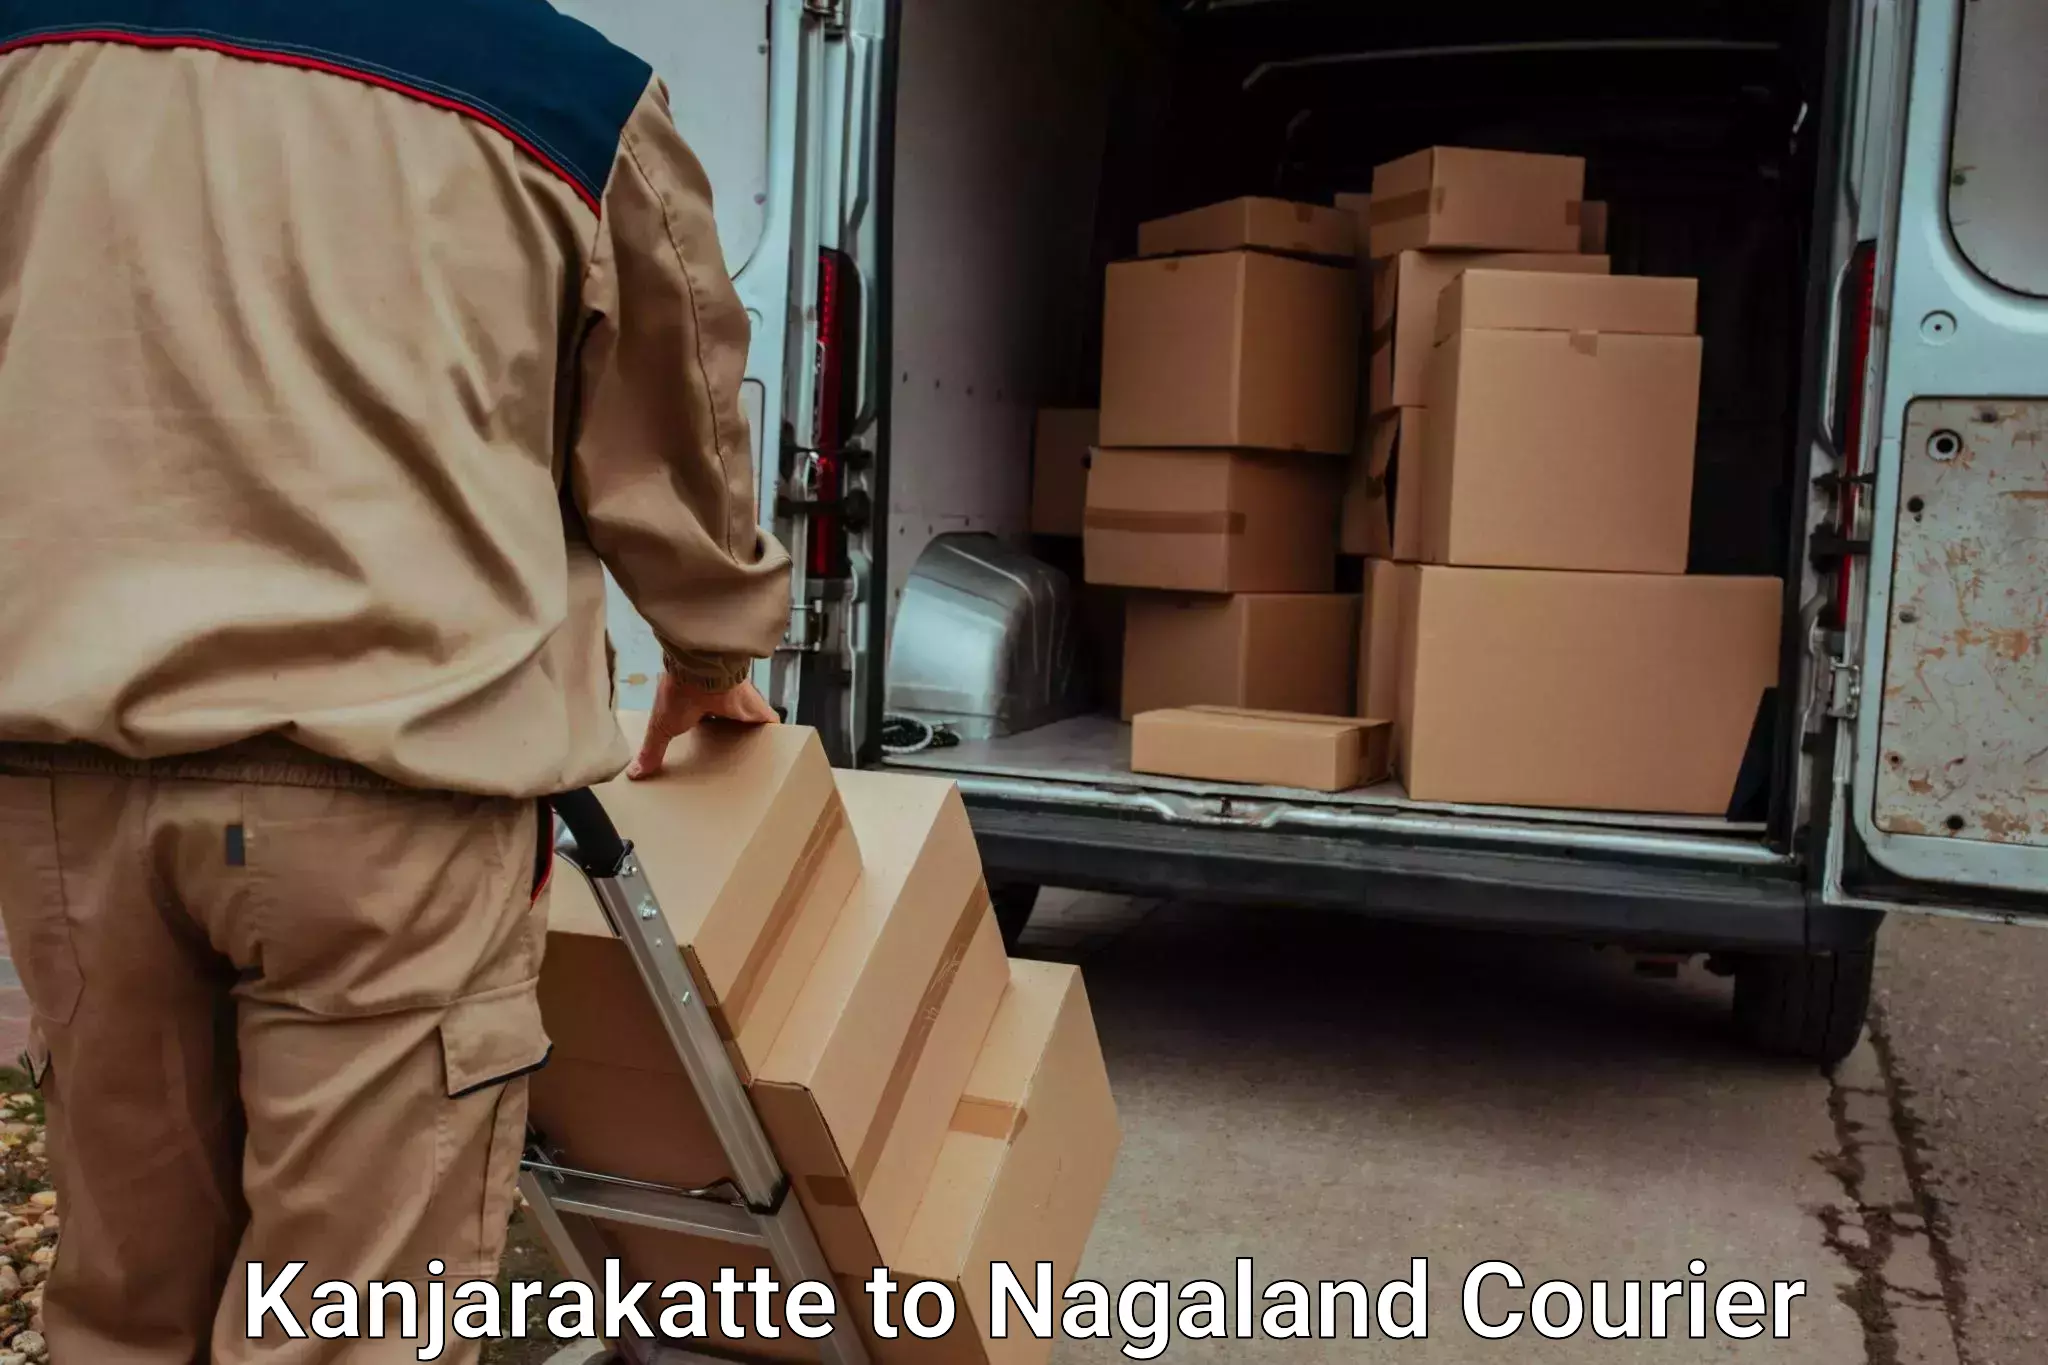 Trusted moving company Kanjarakatte to NIT Nagaland